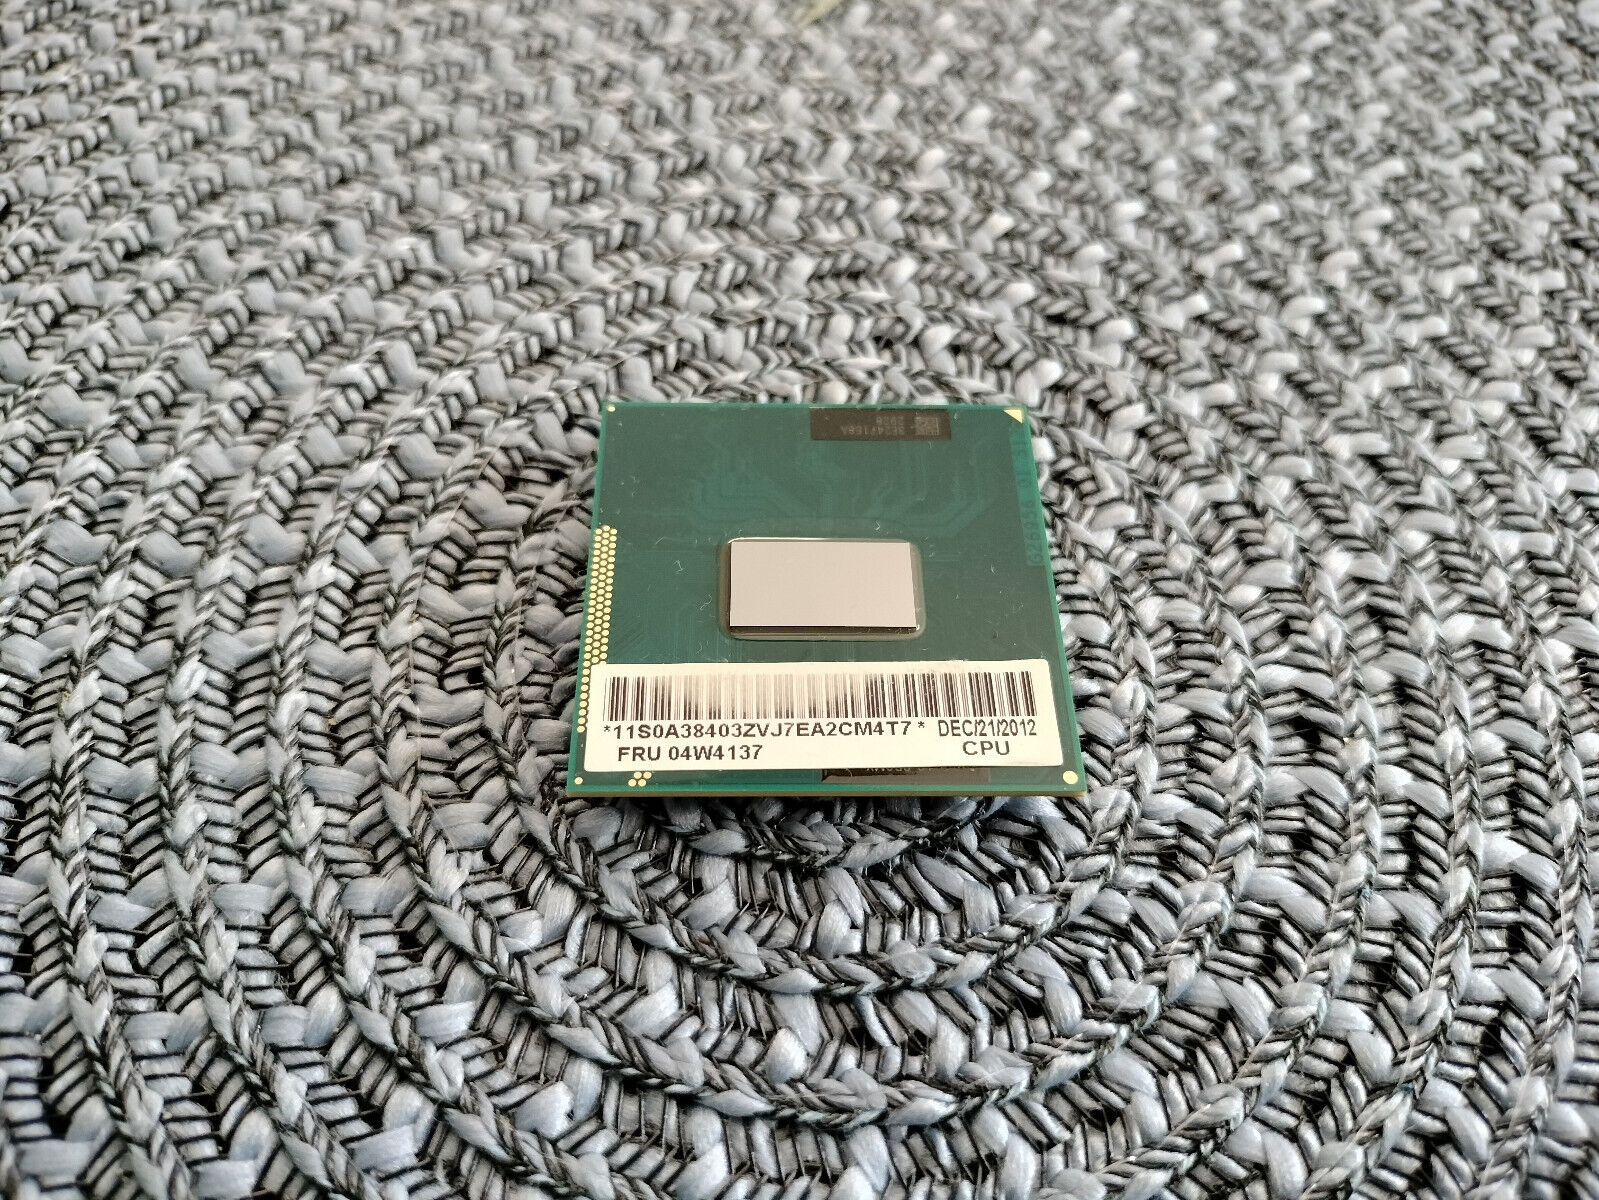 Intel Core i5-3320M SR0MX 2.60GHz CPU, socket G2, FRU 04W4137